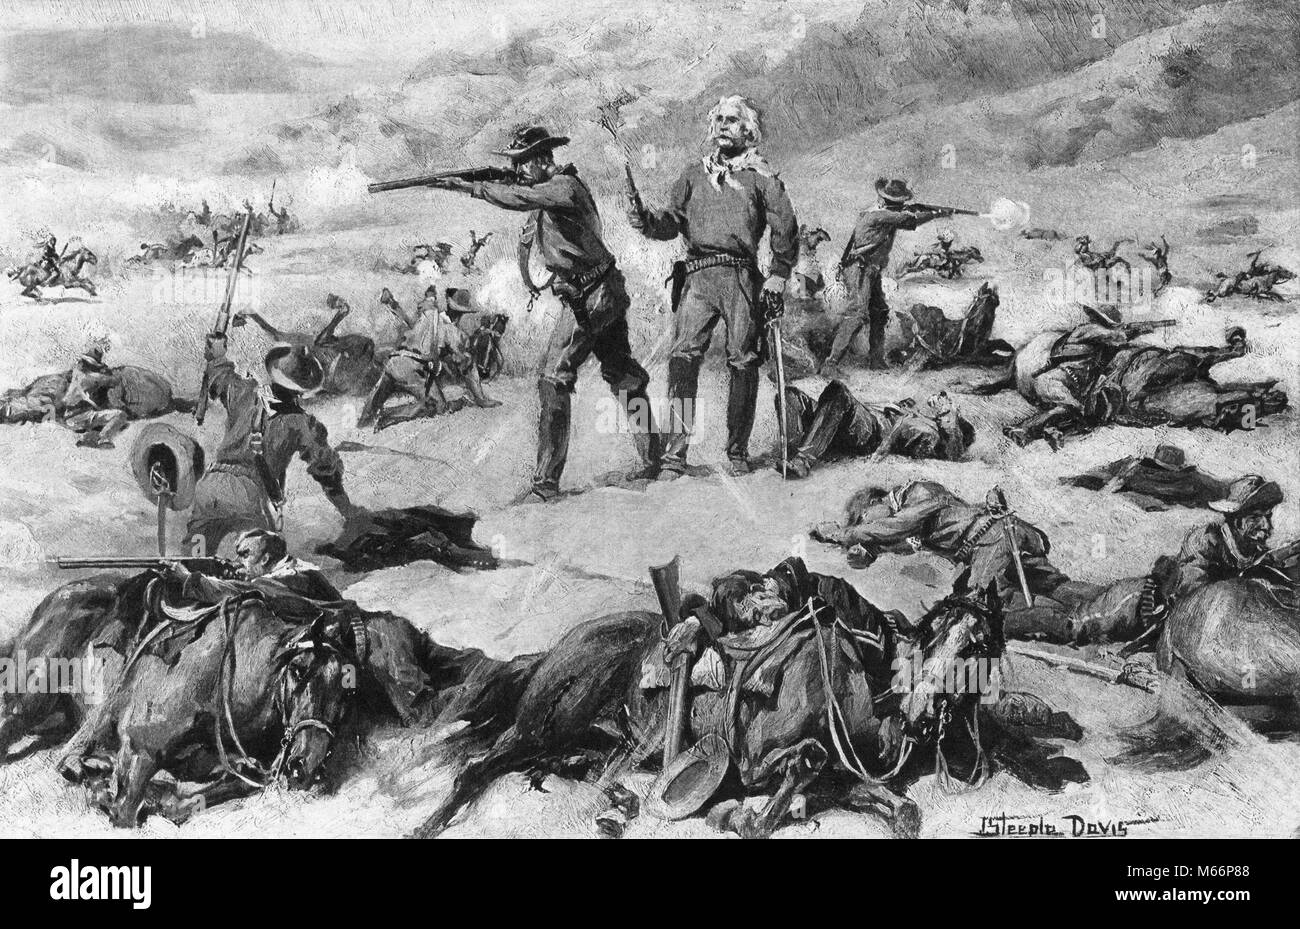 Juin 1876 le général George Custer à la bataille de Little Bighorn massacre par les Amérindiens Lakota et Cheyenne CUSTER'S LAST STAND - q60378 CPC001 HARS TRISTESSE AMÉRIQUE DU NORD-AMÉRICAINE HISTORIQUE AVENTURE CATASTROPHE GUERRE DES MAMMIFÈRES ET DE L'EXCITATION LE COURAGE DES TROUPES DE TIR AVEC D'AUTRES UNIFORMES UNE PERSONNE NATIVE AMERICAN MASSACRE PETIT GROUPE D'ANIMAUX Mammifères Mâles arme Pistolet vaincre les Américains autochtones 1876 ARAPAHO B&W NOIR ET BLANC LE MOUFLON D'ORIGINE ETHNIQUE CAUCASIENNE CHEYENNE CAVALERIE CUSTER CUSTER'S George Armstrong Custer GRANDE GUERRE SIOUX INDIAN WARS JUIN INDIGÈNES tués le 7 juin dernier LAKOTA MASSACRÉS Banque D'Images